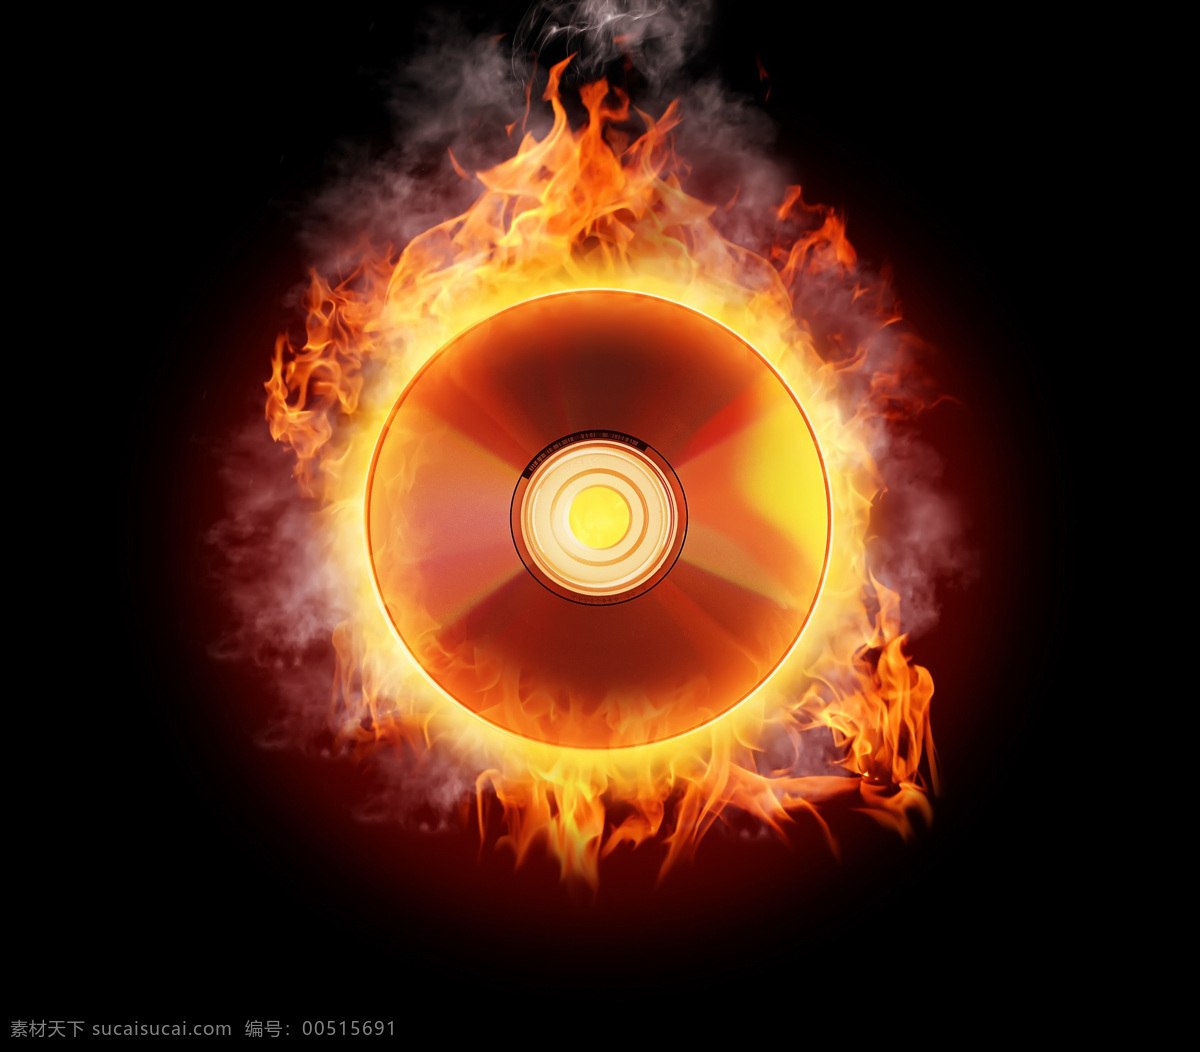 高清 火焰 光盘 碟片 火苗 烈火 燃烧火焰 烟雾 音乐光盘 高清火焰